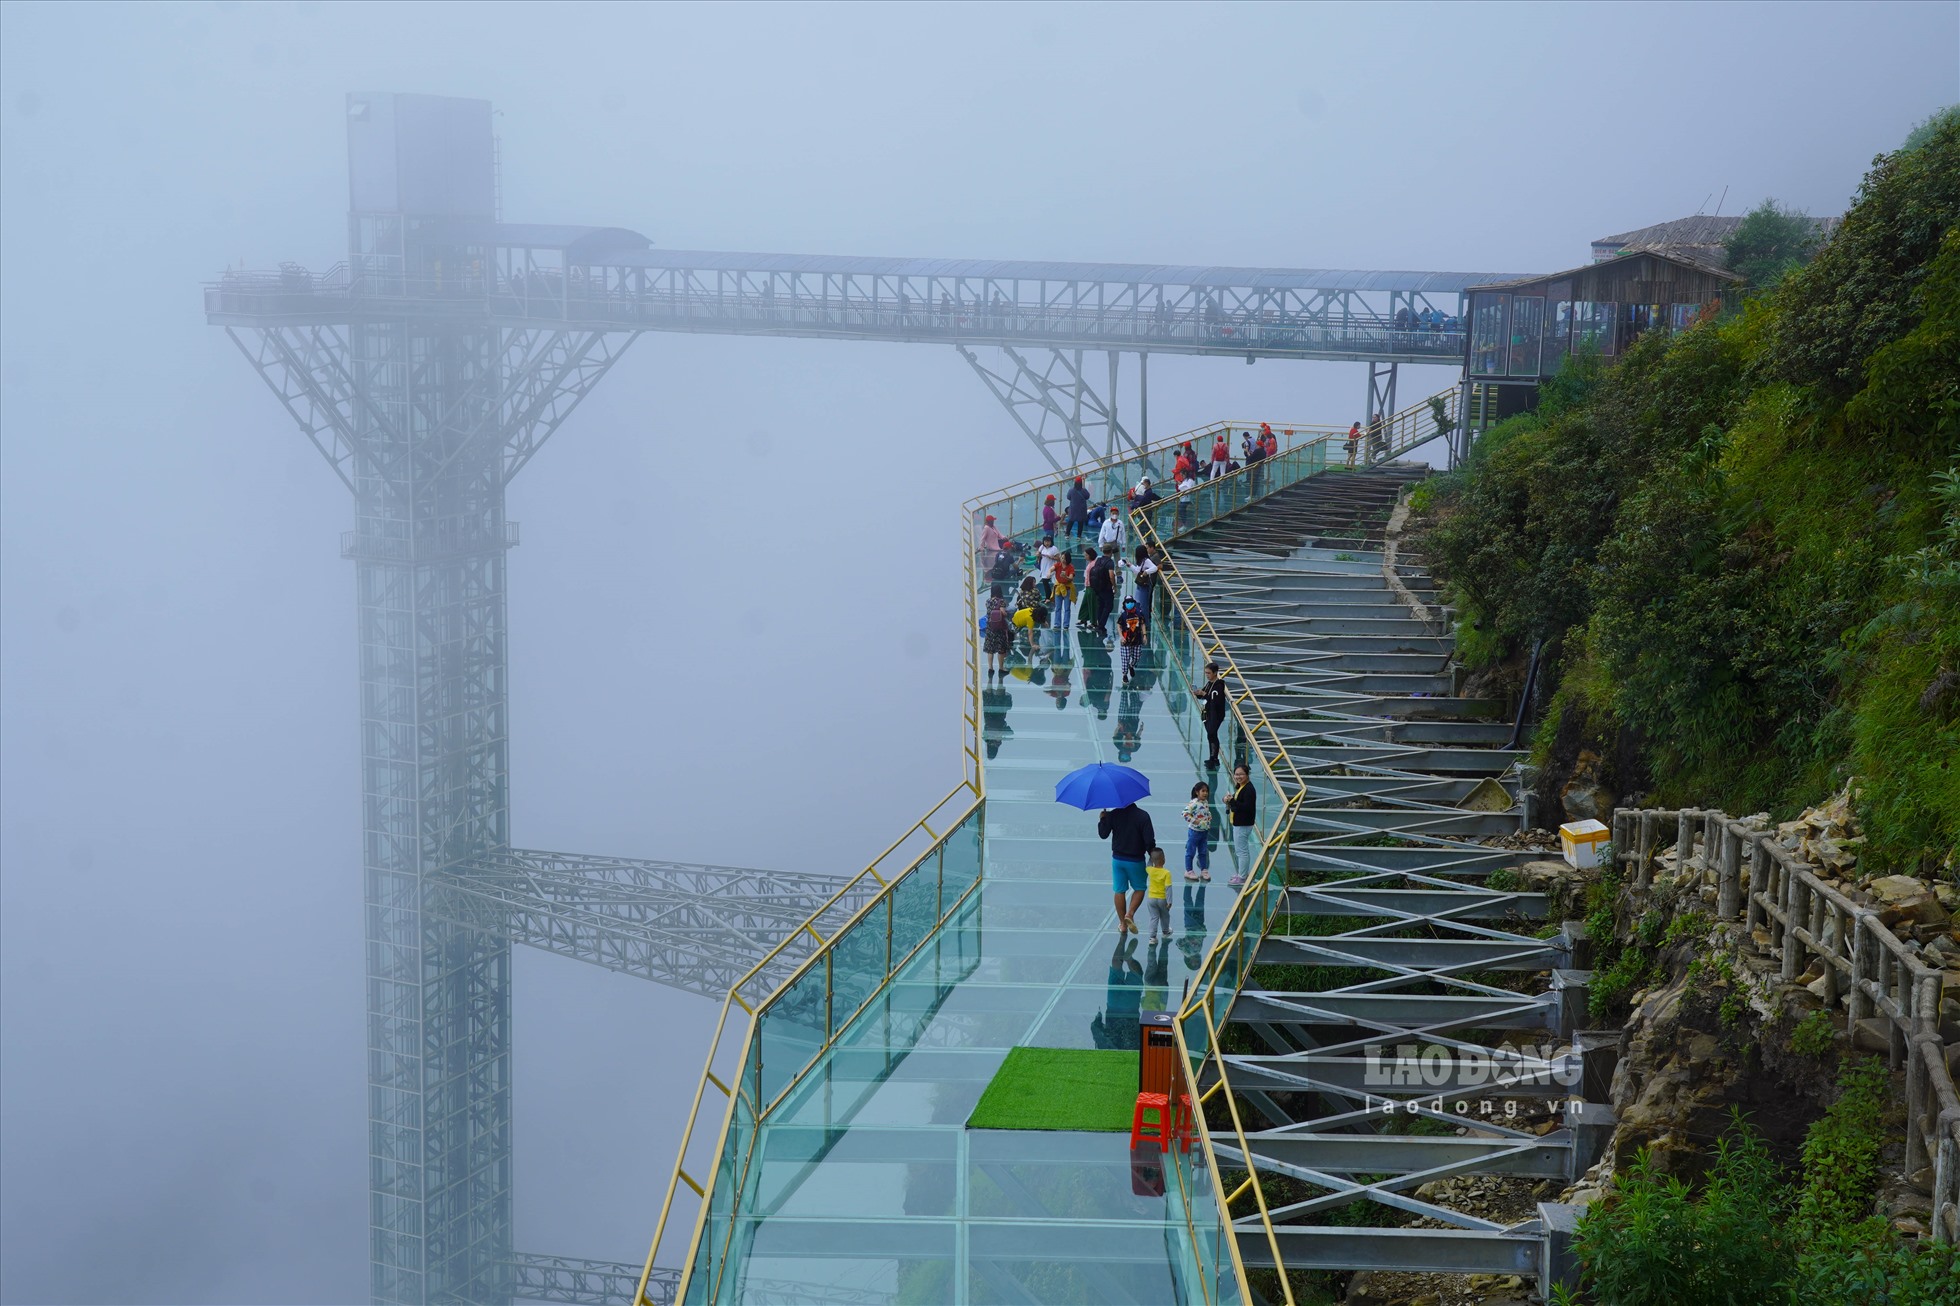 Cầu kính Rồng Mây được xem như “kỳ quan tiên cảnh” với hệ thống cầu treo vắt vẻo giữa đỉnh trời, nằm ở độ cao 2.333m so với mực nước biển, thuộc xã Sơn Bình, huyện Tam Đường, tỉnh Lai Châu.